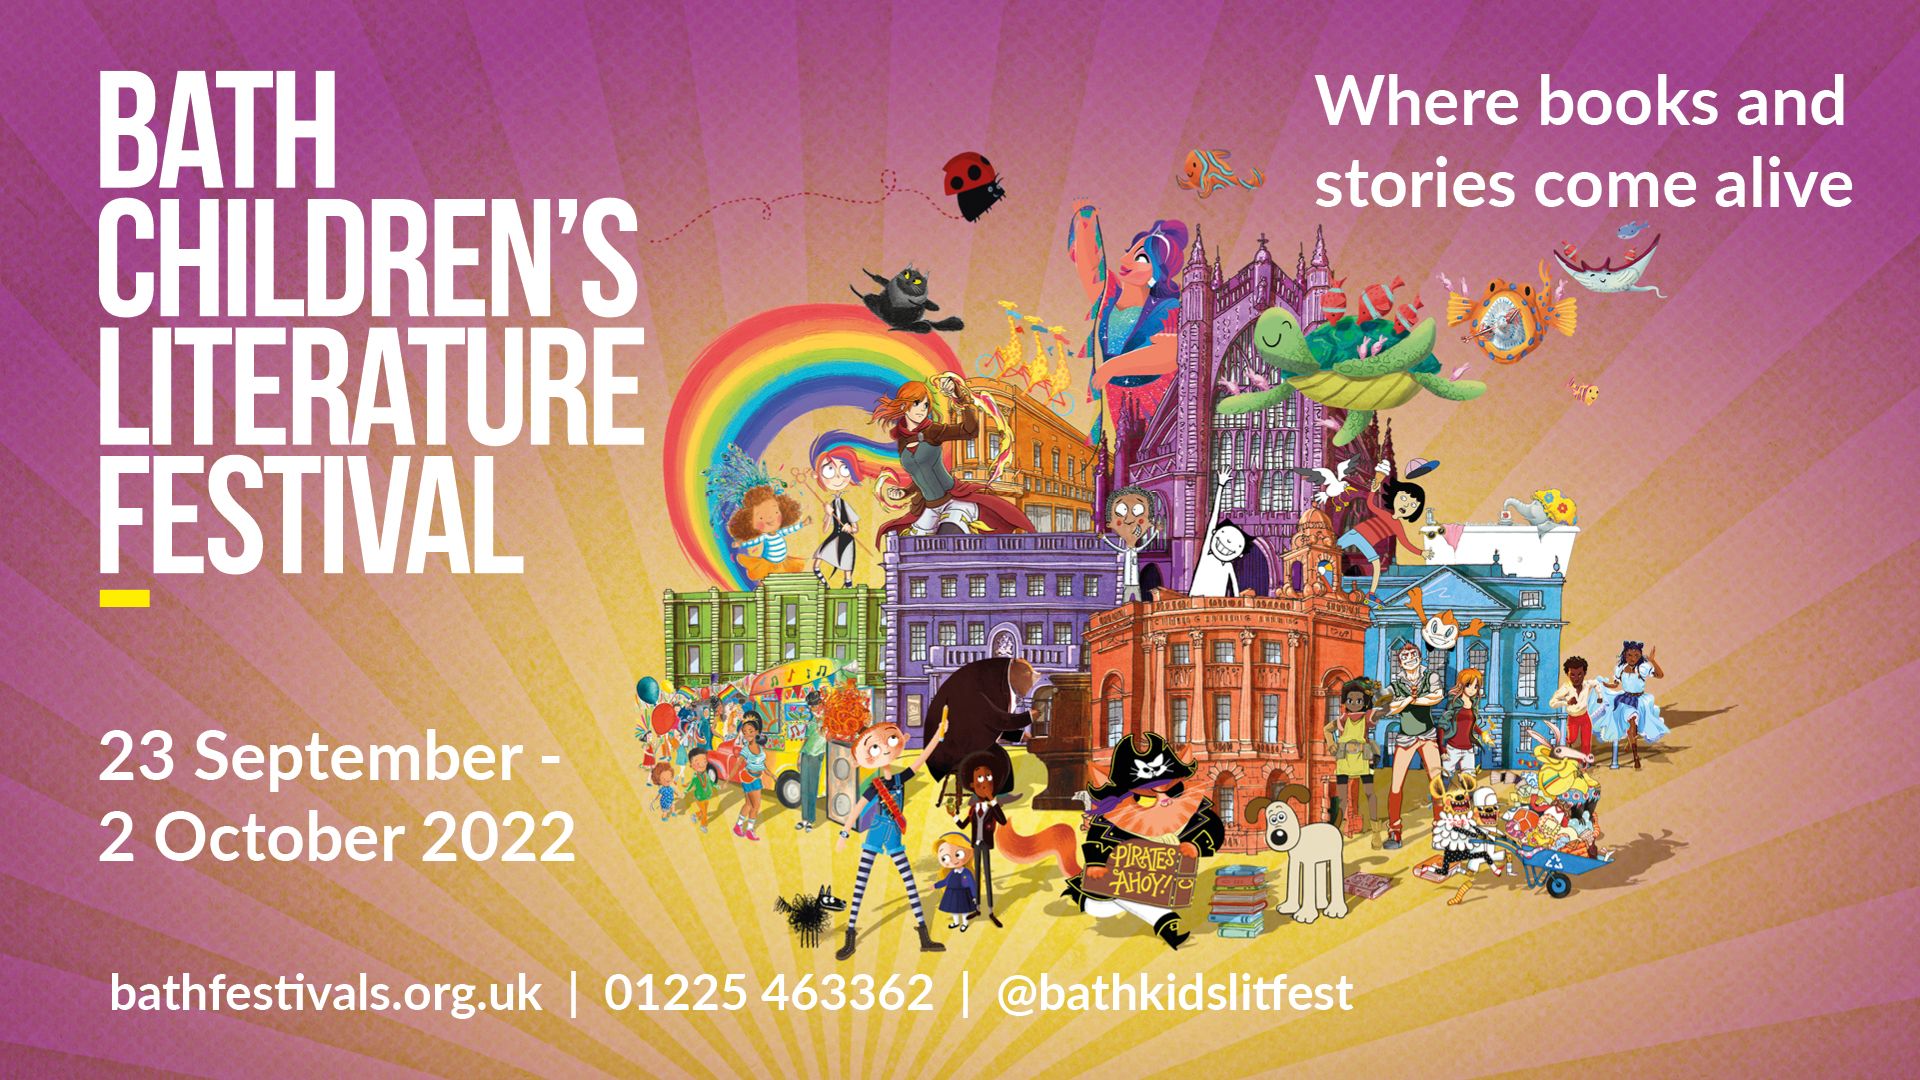 Bath Children's Literature Festival 2022 Programme Announcement